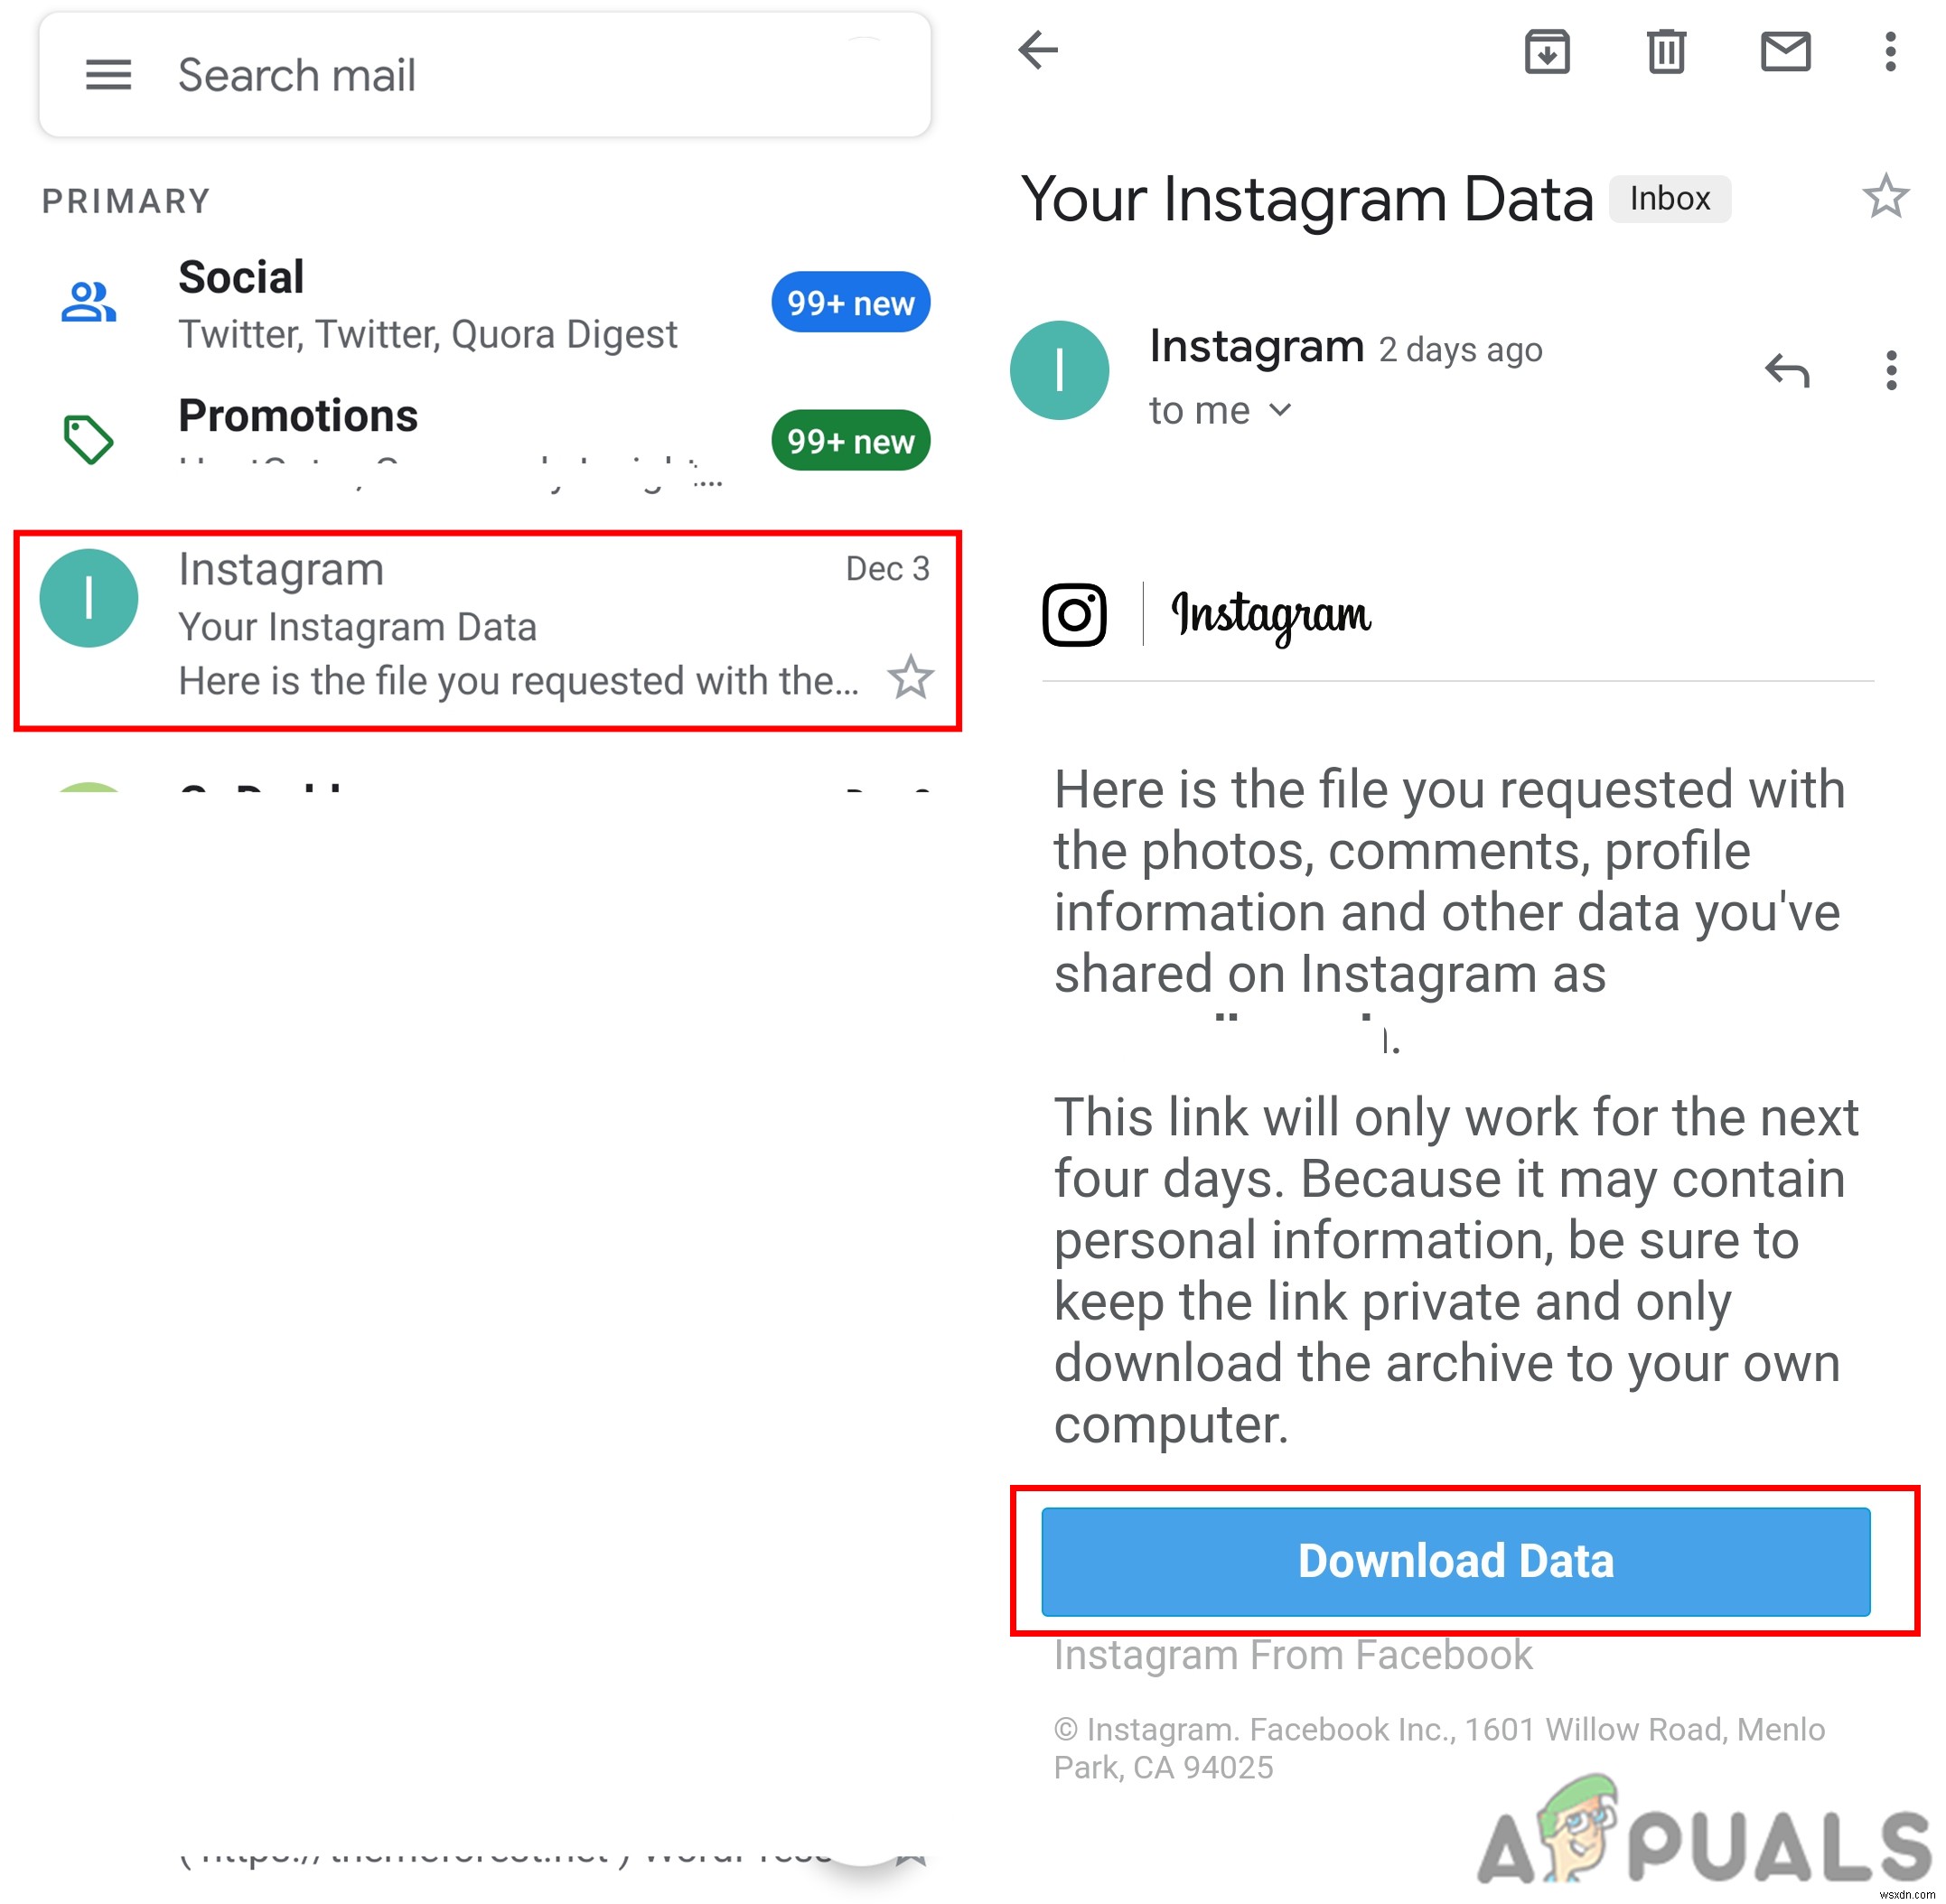 डाउनलोड डेटा के माध्यम से हटाए गए Instagram संदेशों को कैसे पुनर्प्राप्त करें